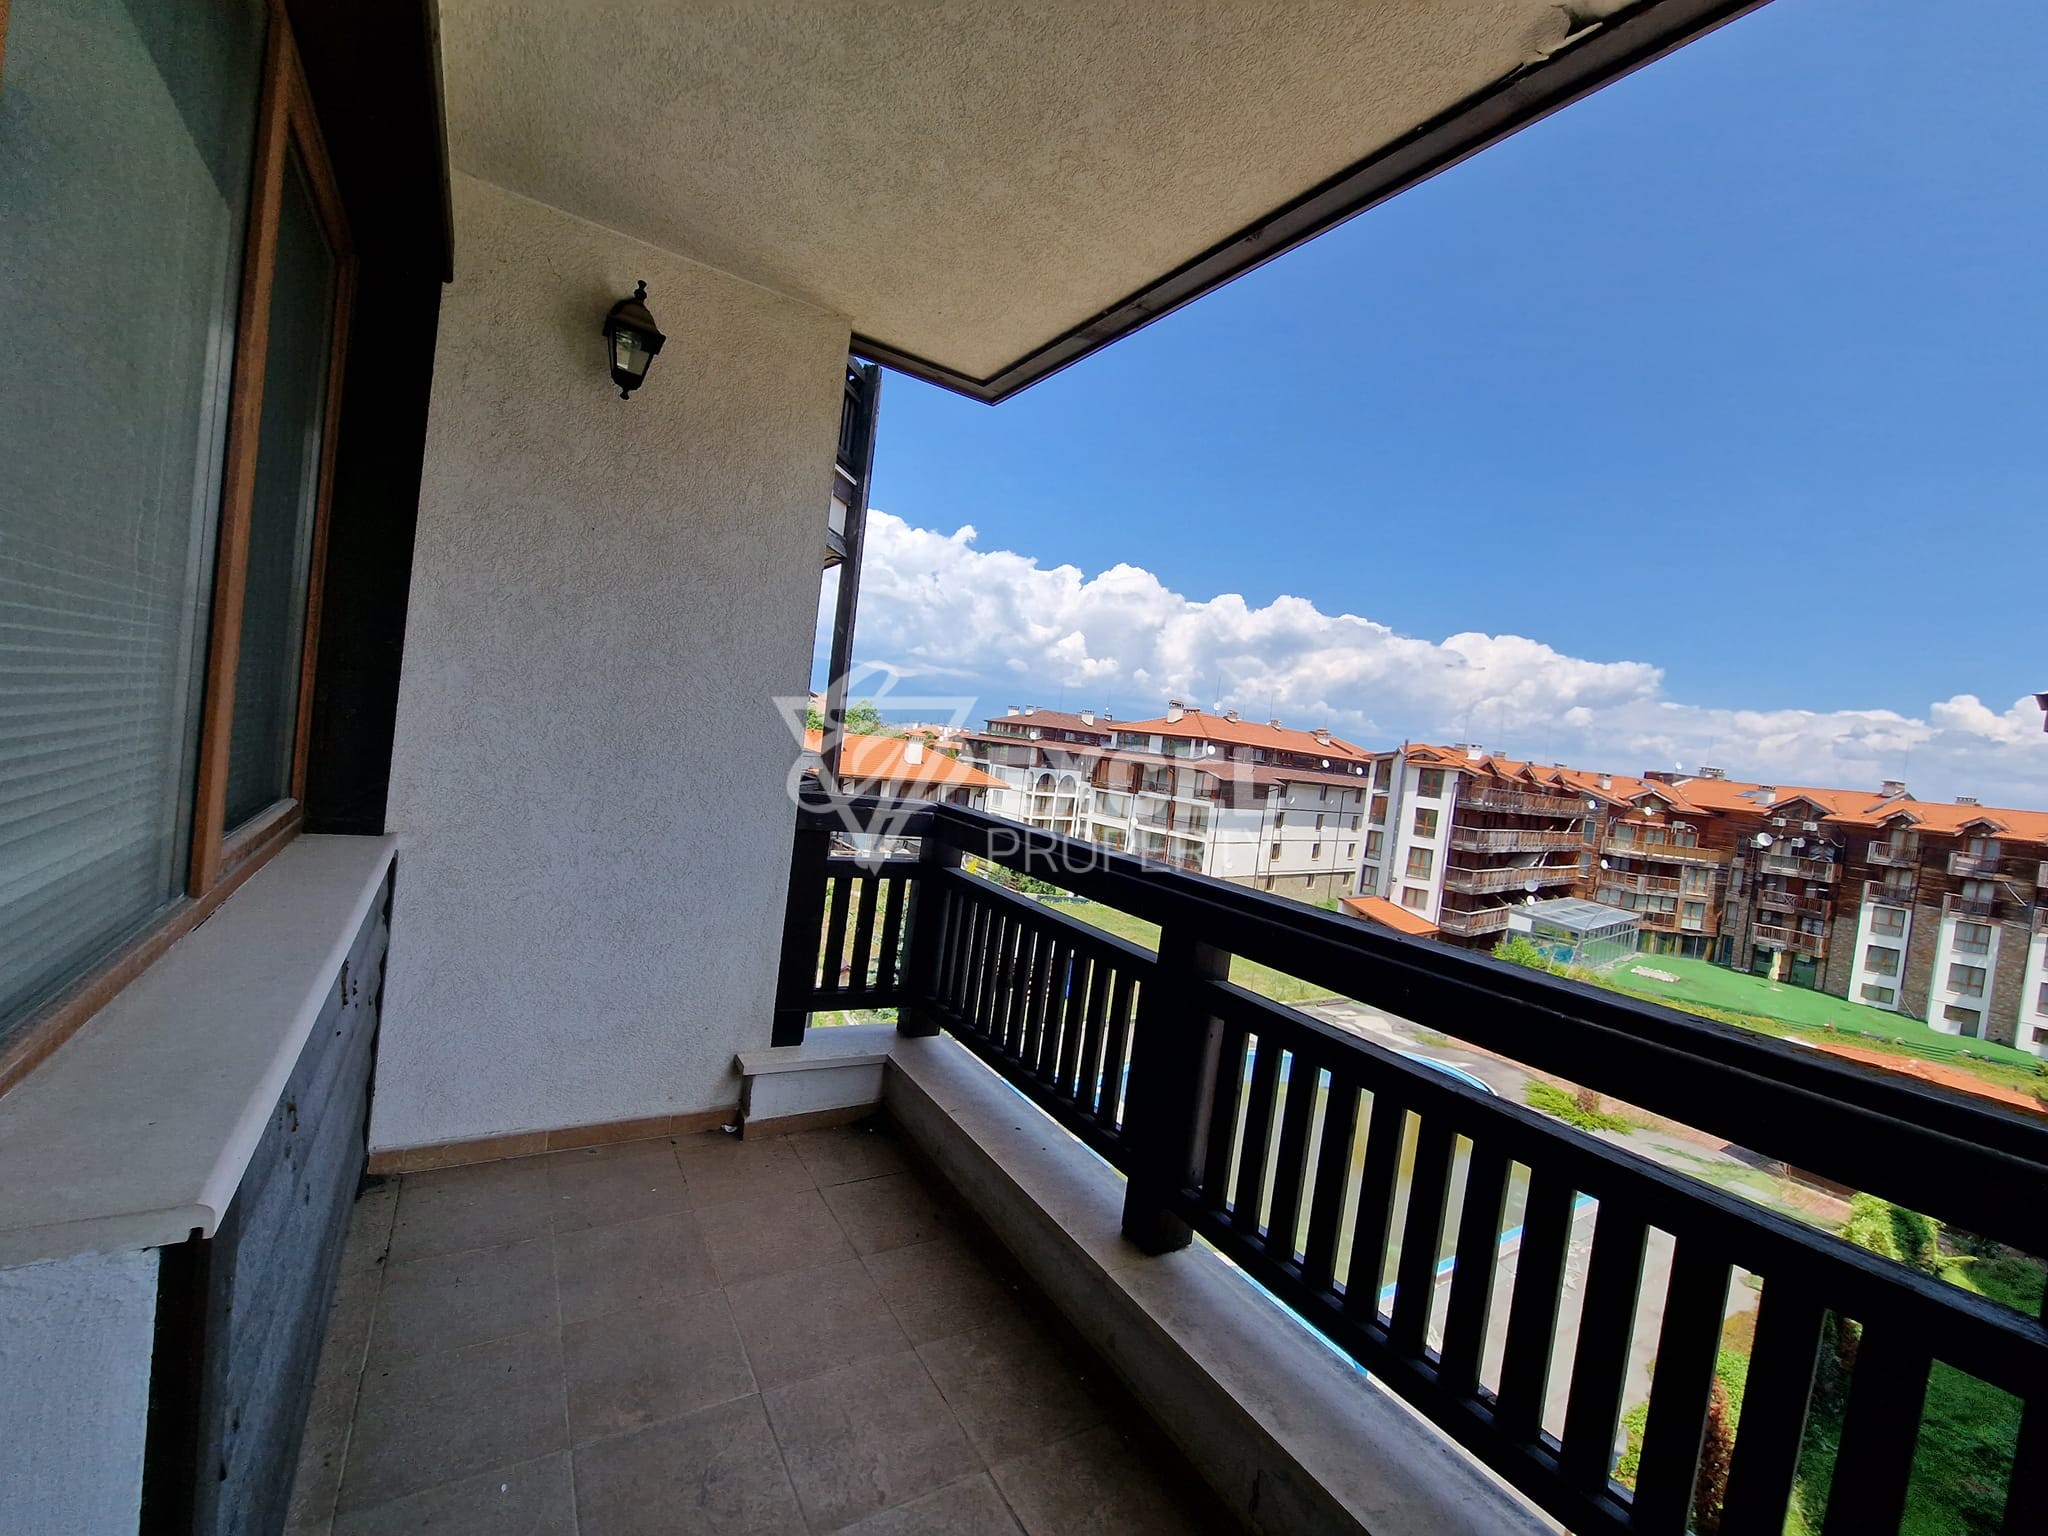 Двустаен апартамент на изгодна цена до хотел Лион в Банско